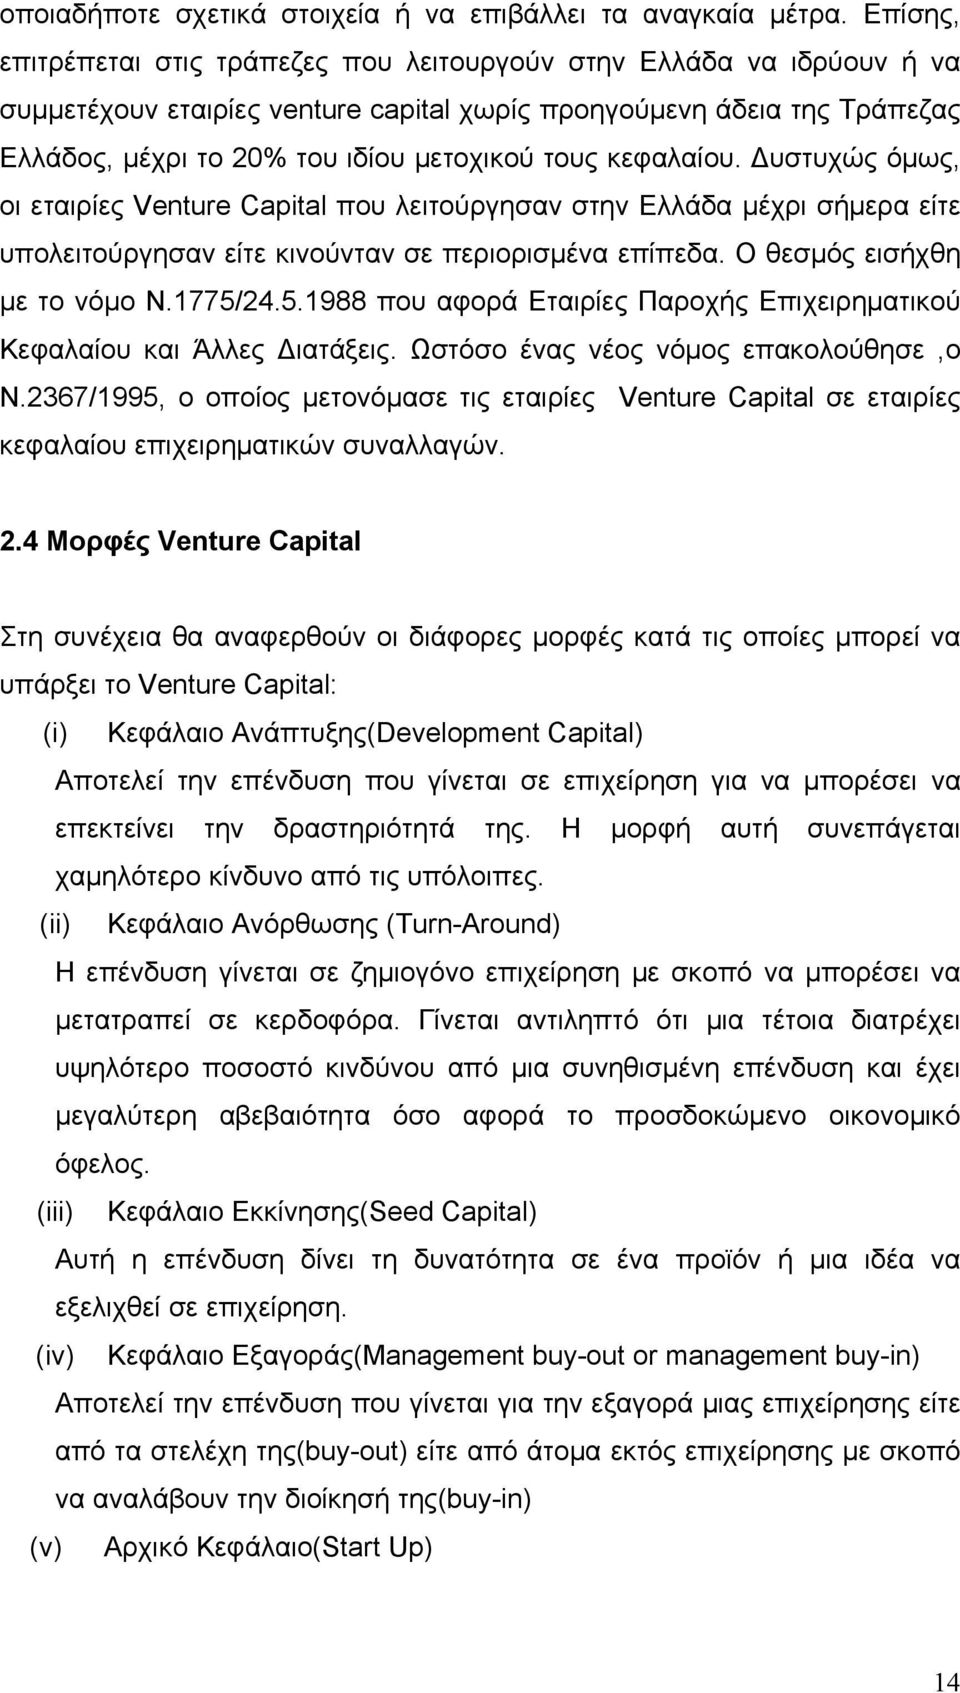 κεφαλαίου. Δυστυχώς όμως, οι εταιρίες Venture Capital που λειτούργησαν στην Ελλάδα μέχρι σήμερα είτε υπολειτούργησαν είτε κινούνταν σε περιορισμένα επίπεδα. Ο θεσμός εισήχθη με το νόμο Ν.1775/